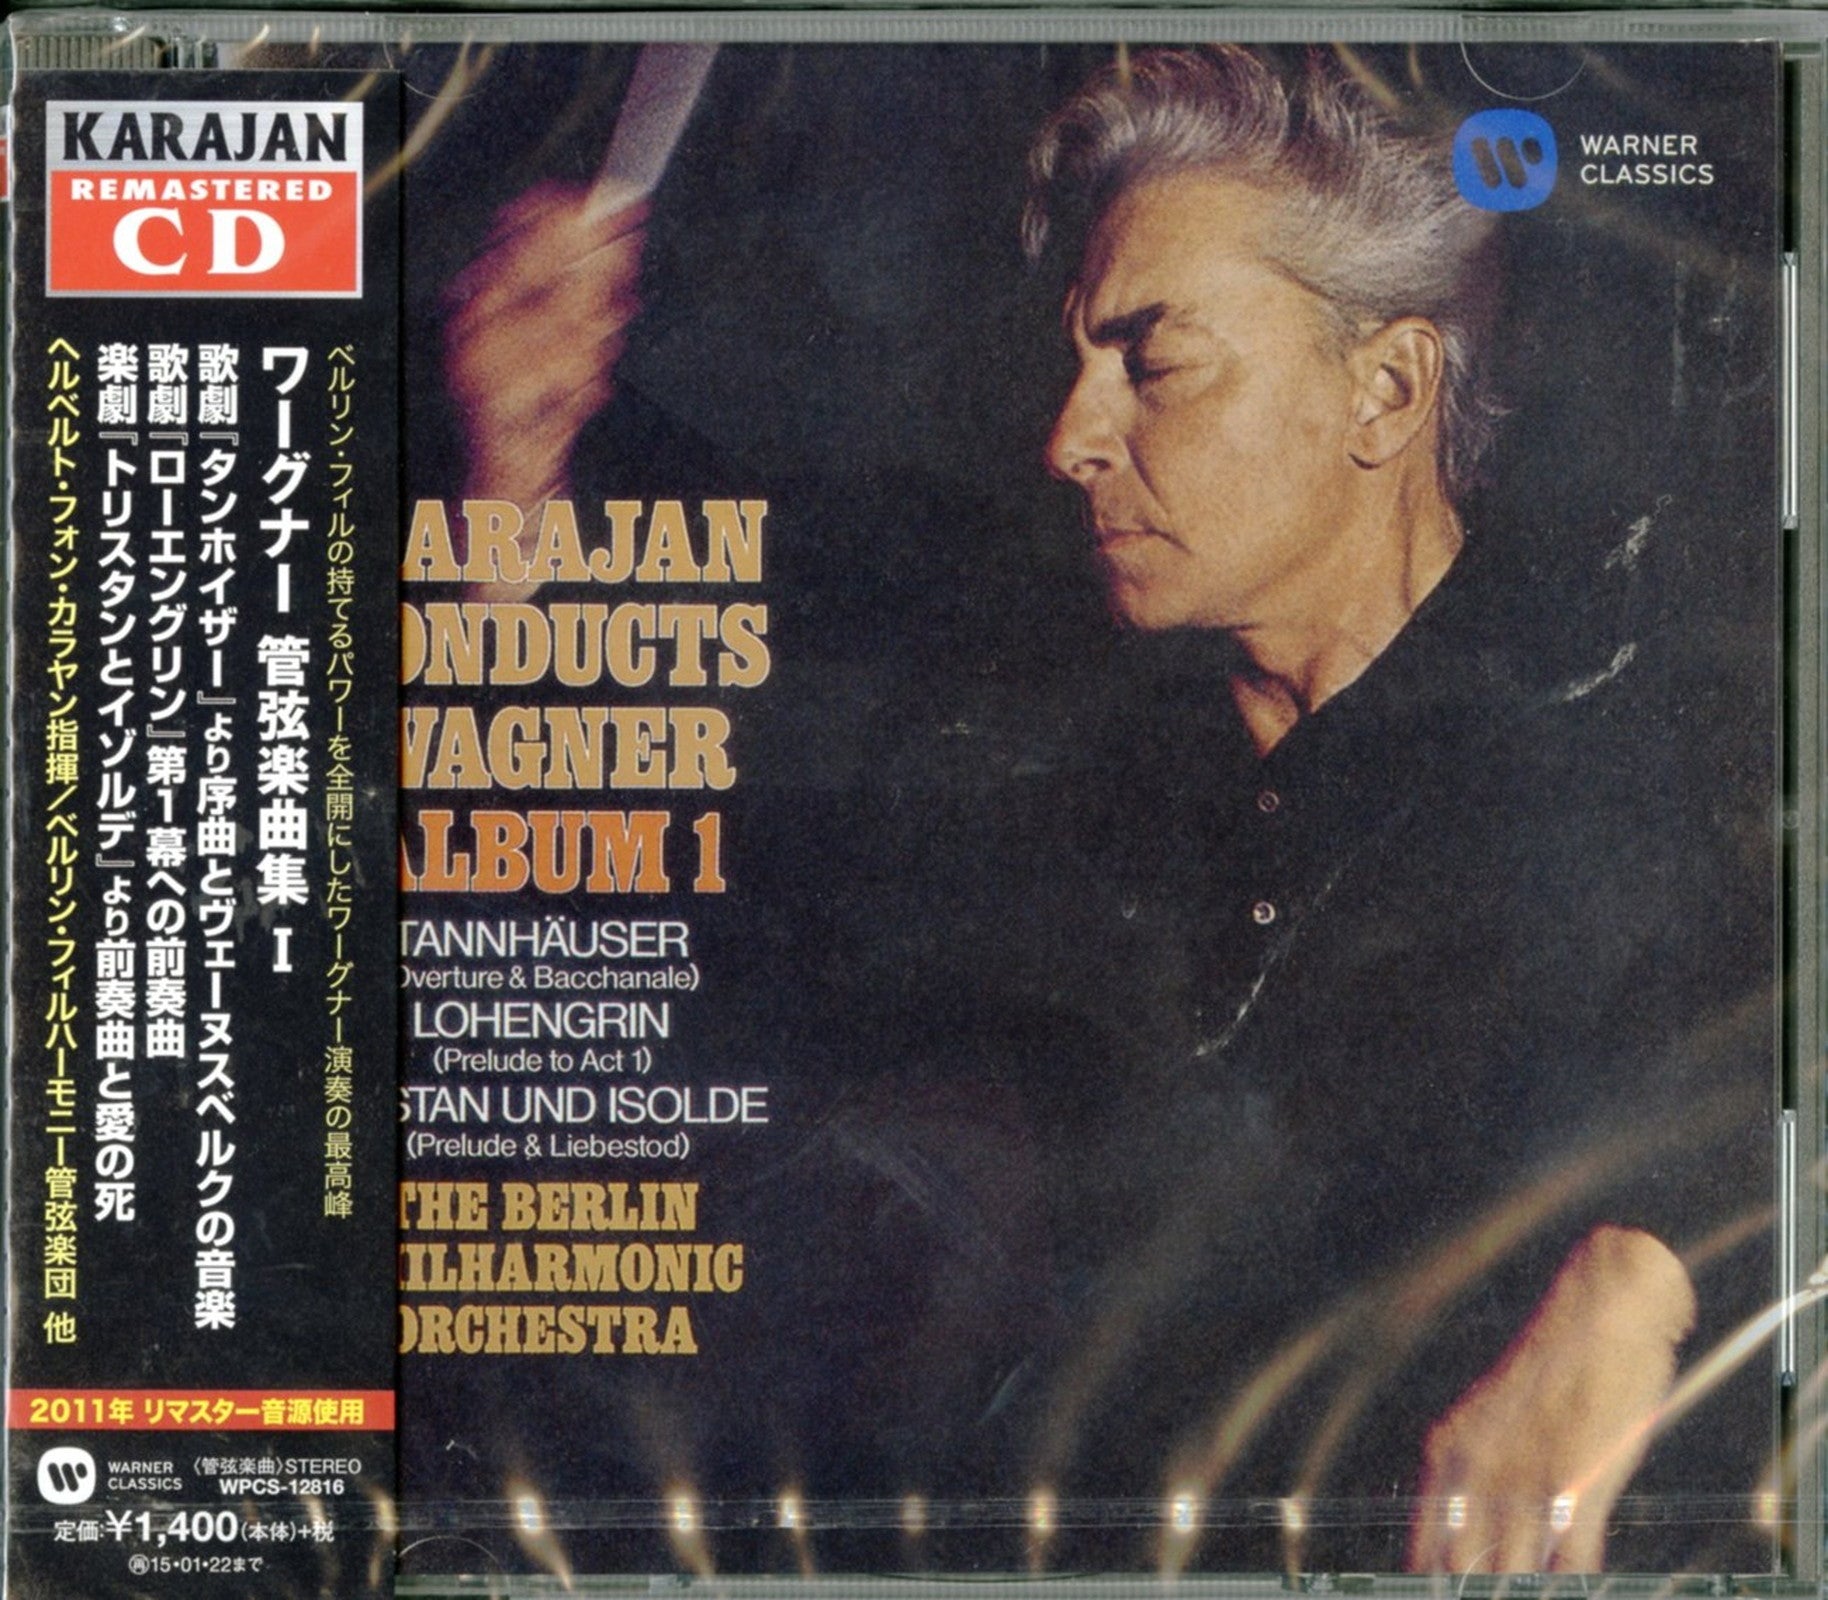 Herbert Von Karajan - Karajan Conducts Wagner 1 - Japan CD – CDs